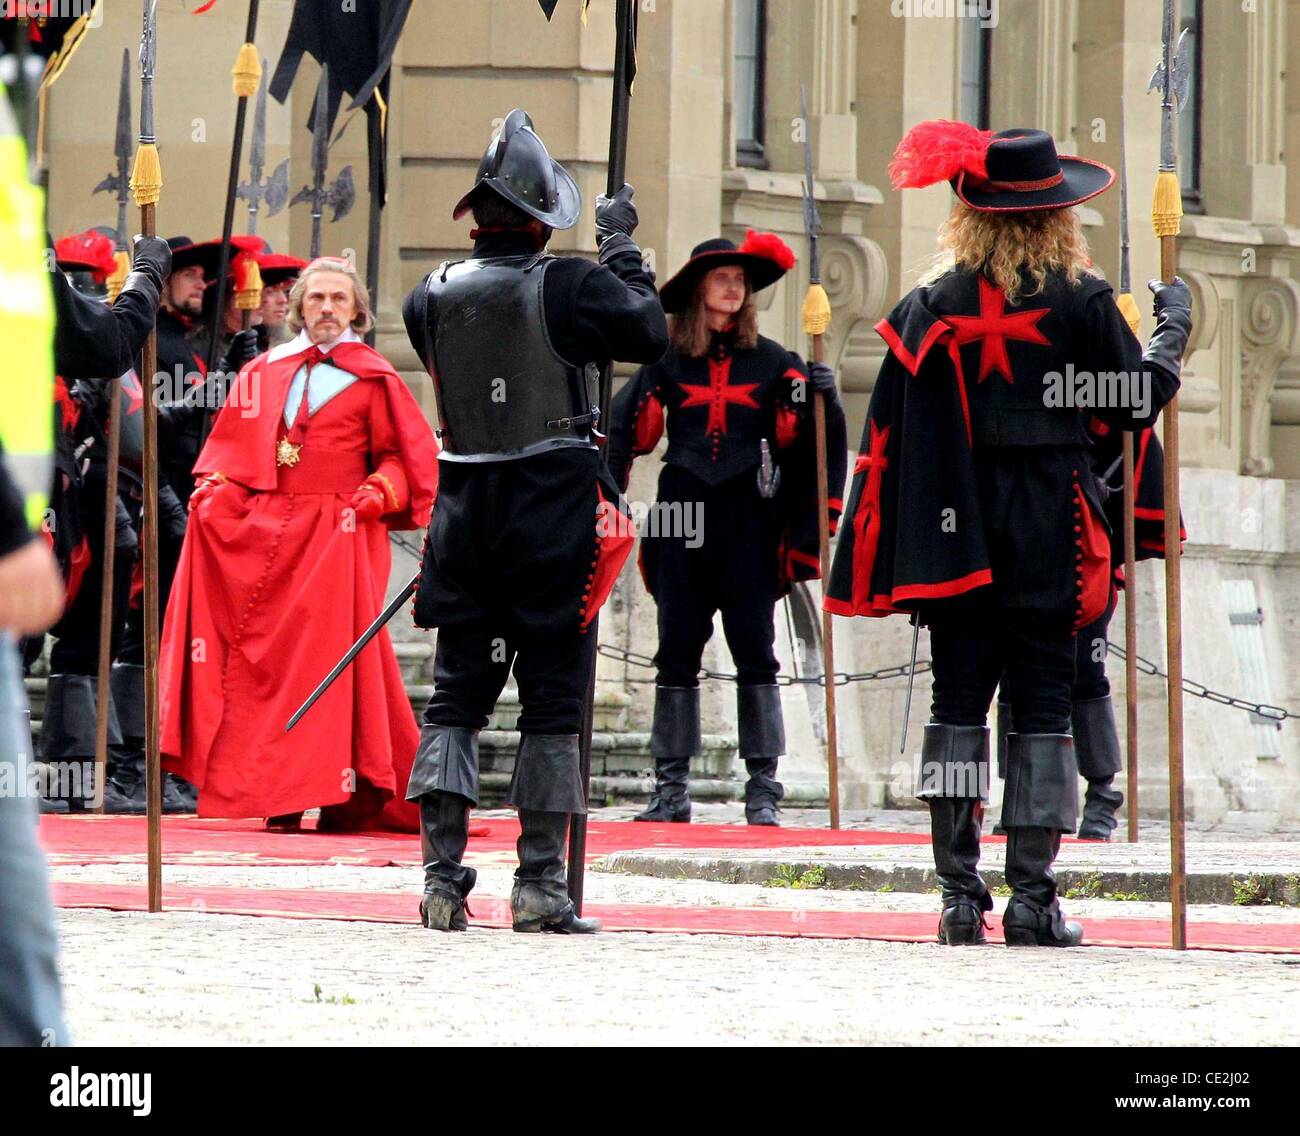 Christoph Waltz im Kostüm als "Kardinal Richelieu" am Set von "Die drei  Musketiere" Residenz Wuerzburg. Würzburg - 16.09.2010 Stockfotografie -  Alamy